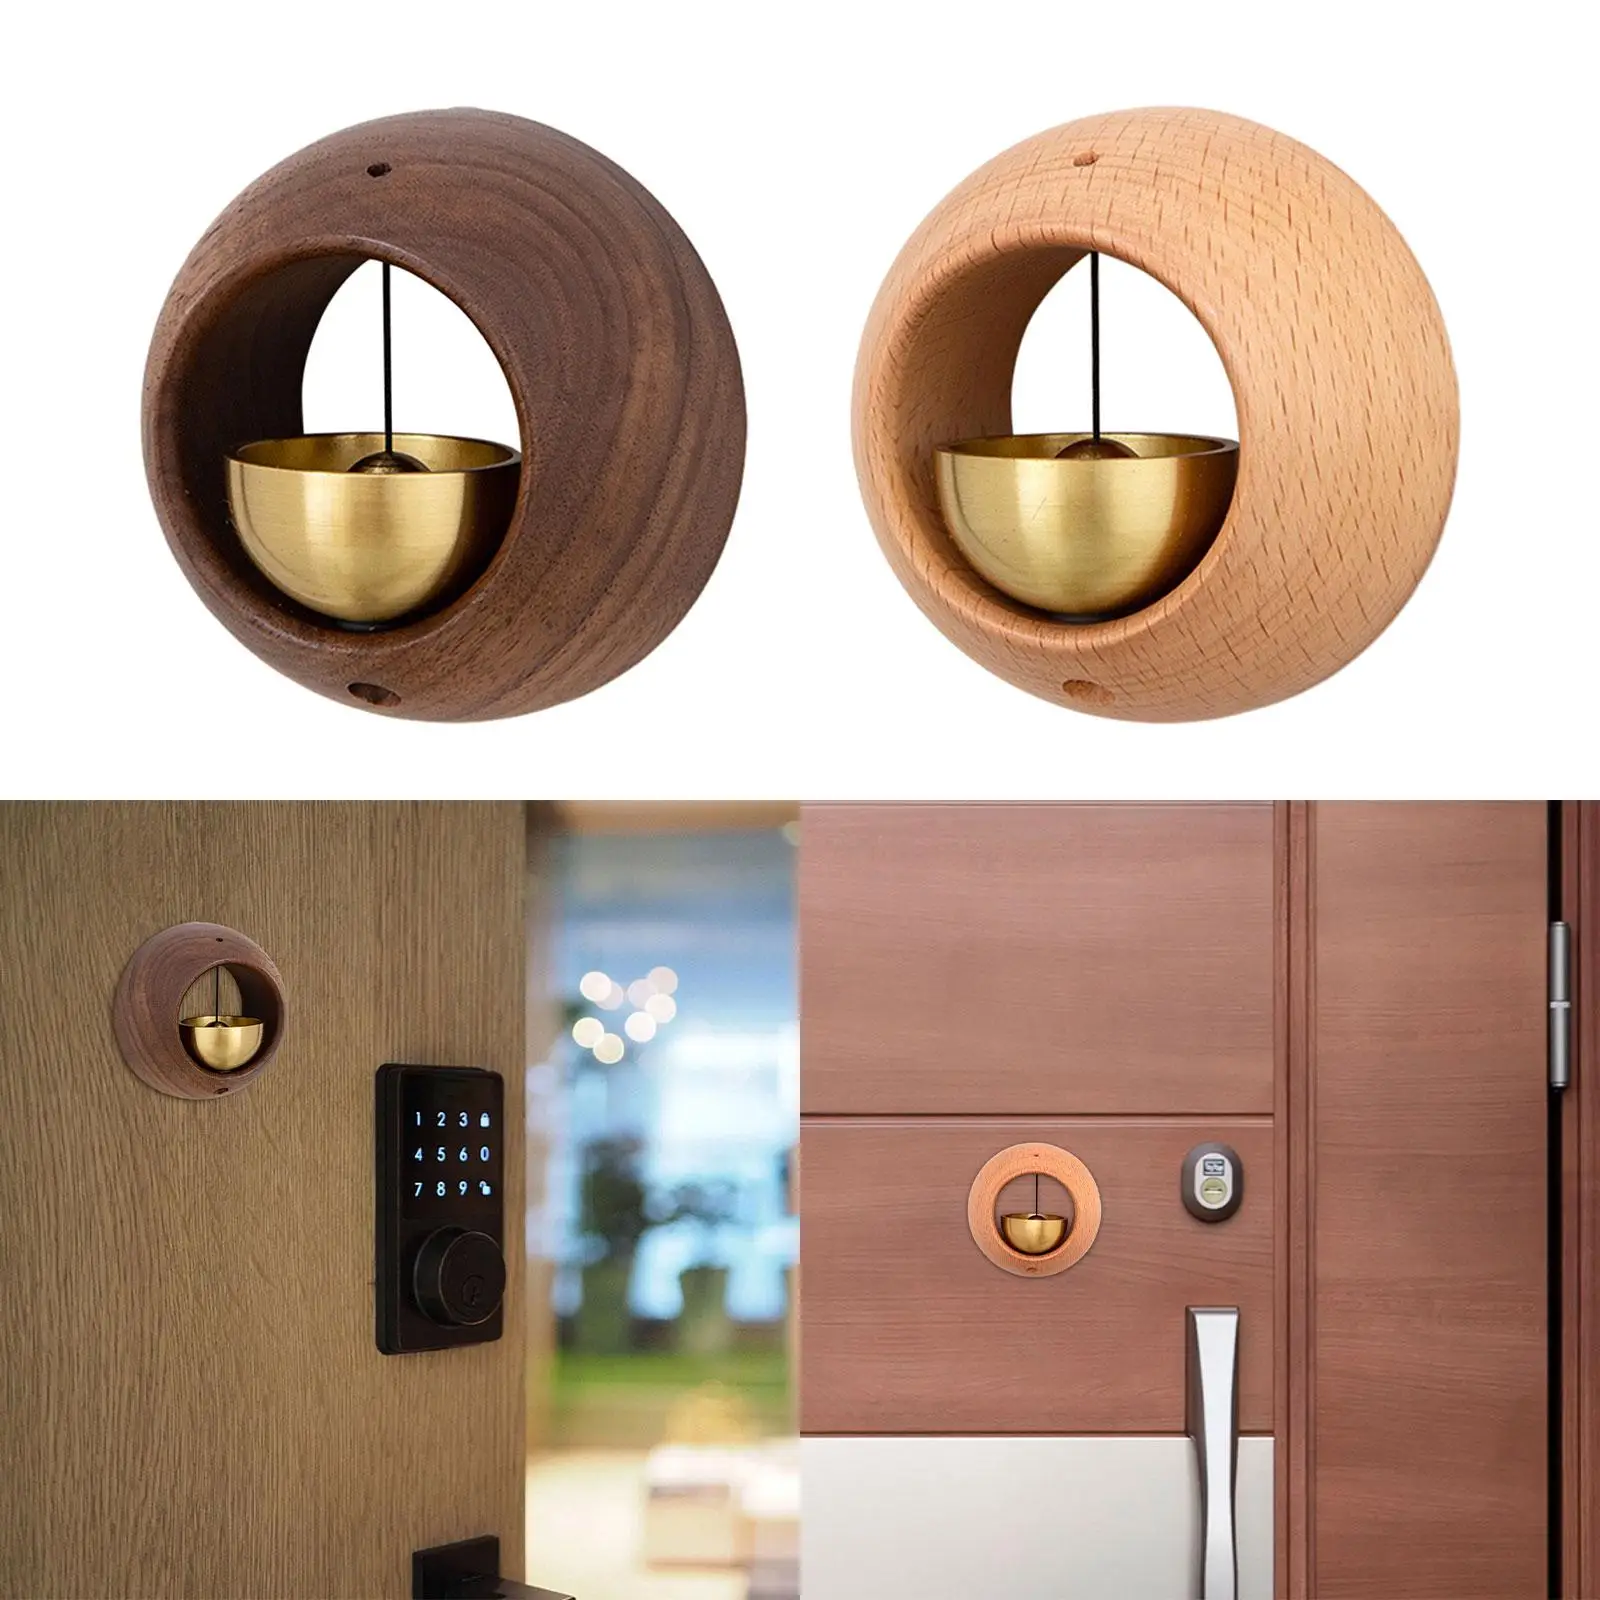 Shopkeepers Bell for Door Opening Small Doorbell for Home Fridge Front Door